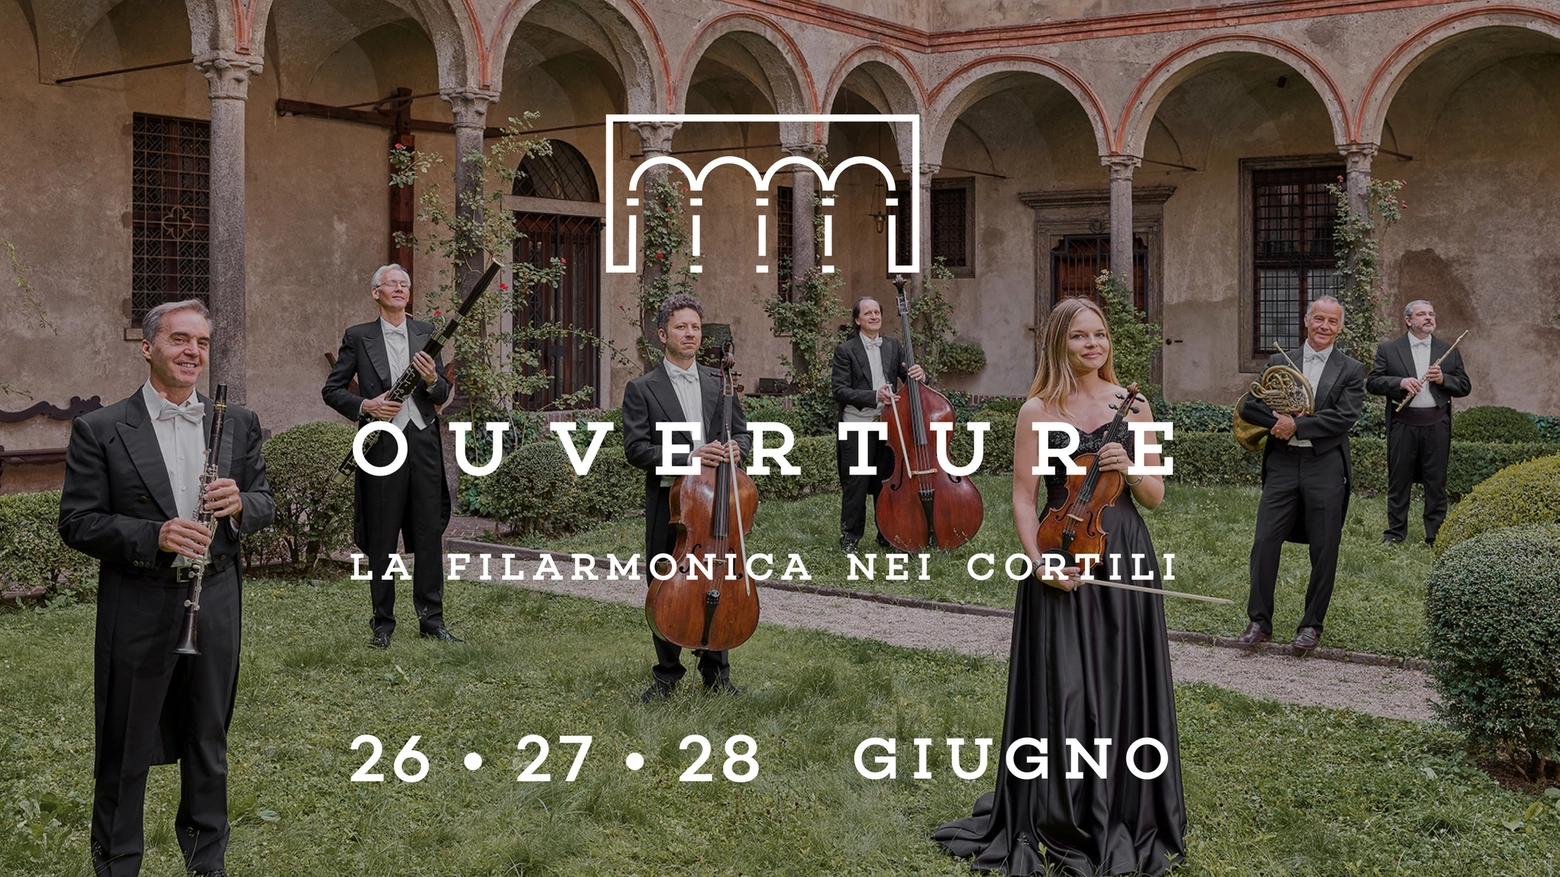 Ouverture, Filarmonica della Scala in diretta streaming dai cortili di Milano